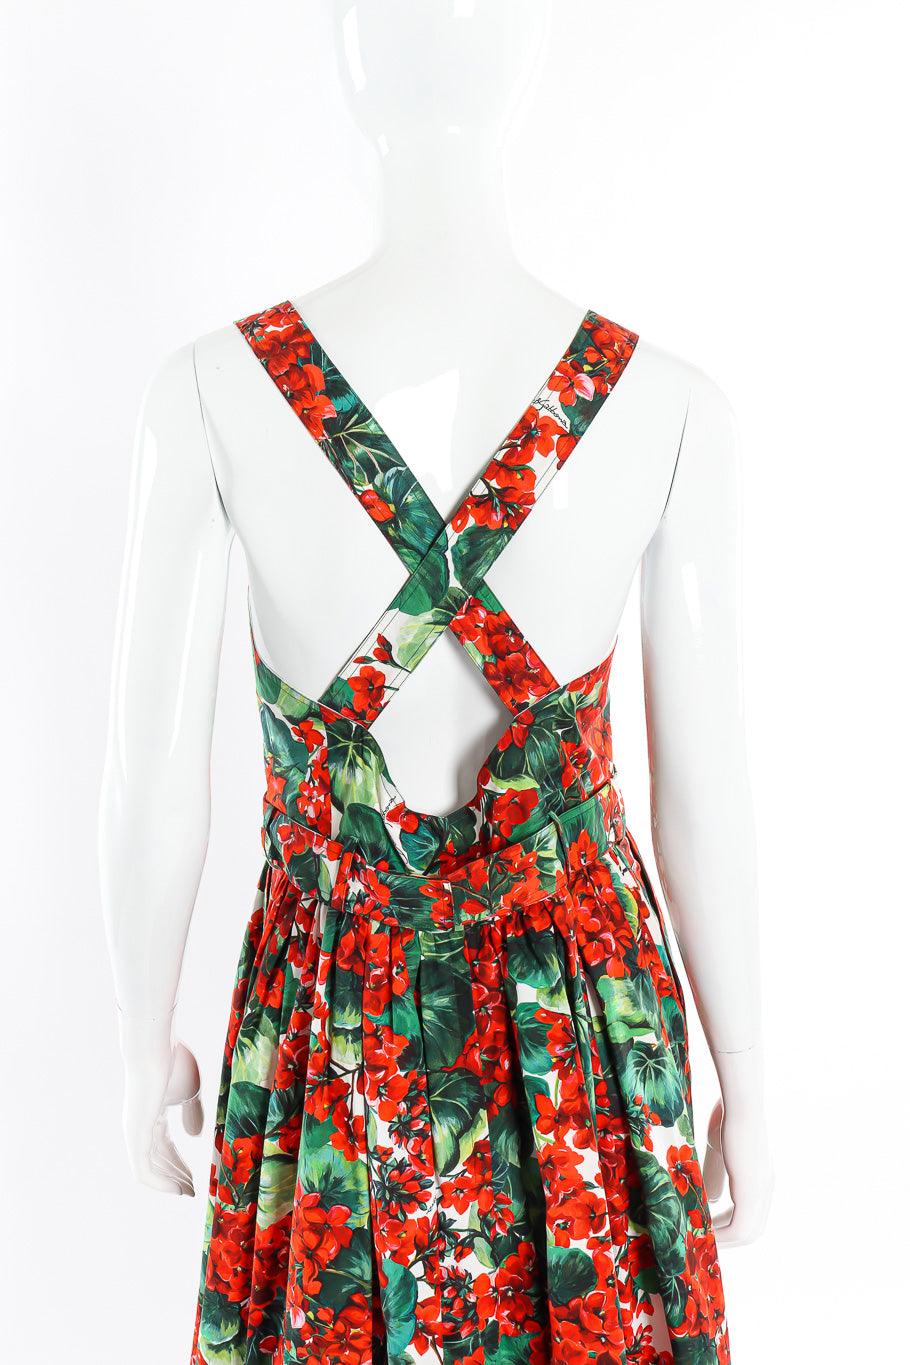 Dolce and Gabbana Floral Leaf Cotton Dress on mannequin back @recessla